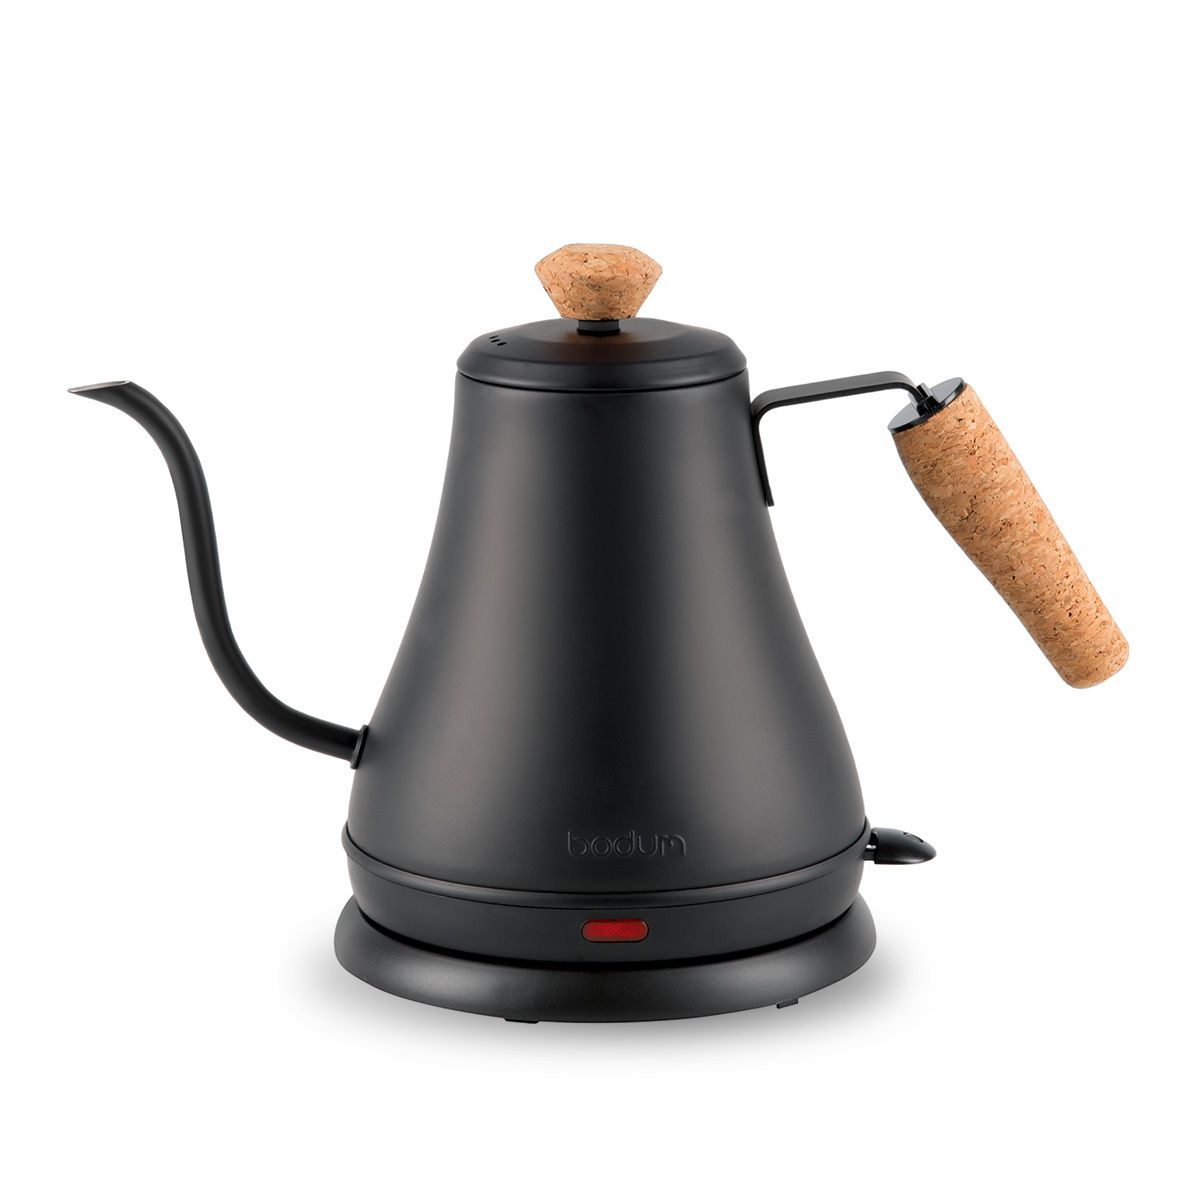 MELIOR Gooseneck Electric kettle with long spout, 0.8L - Bodum